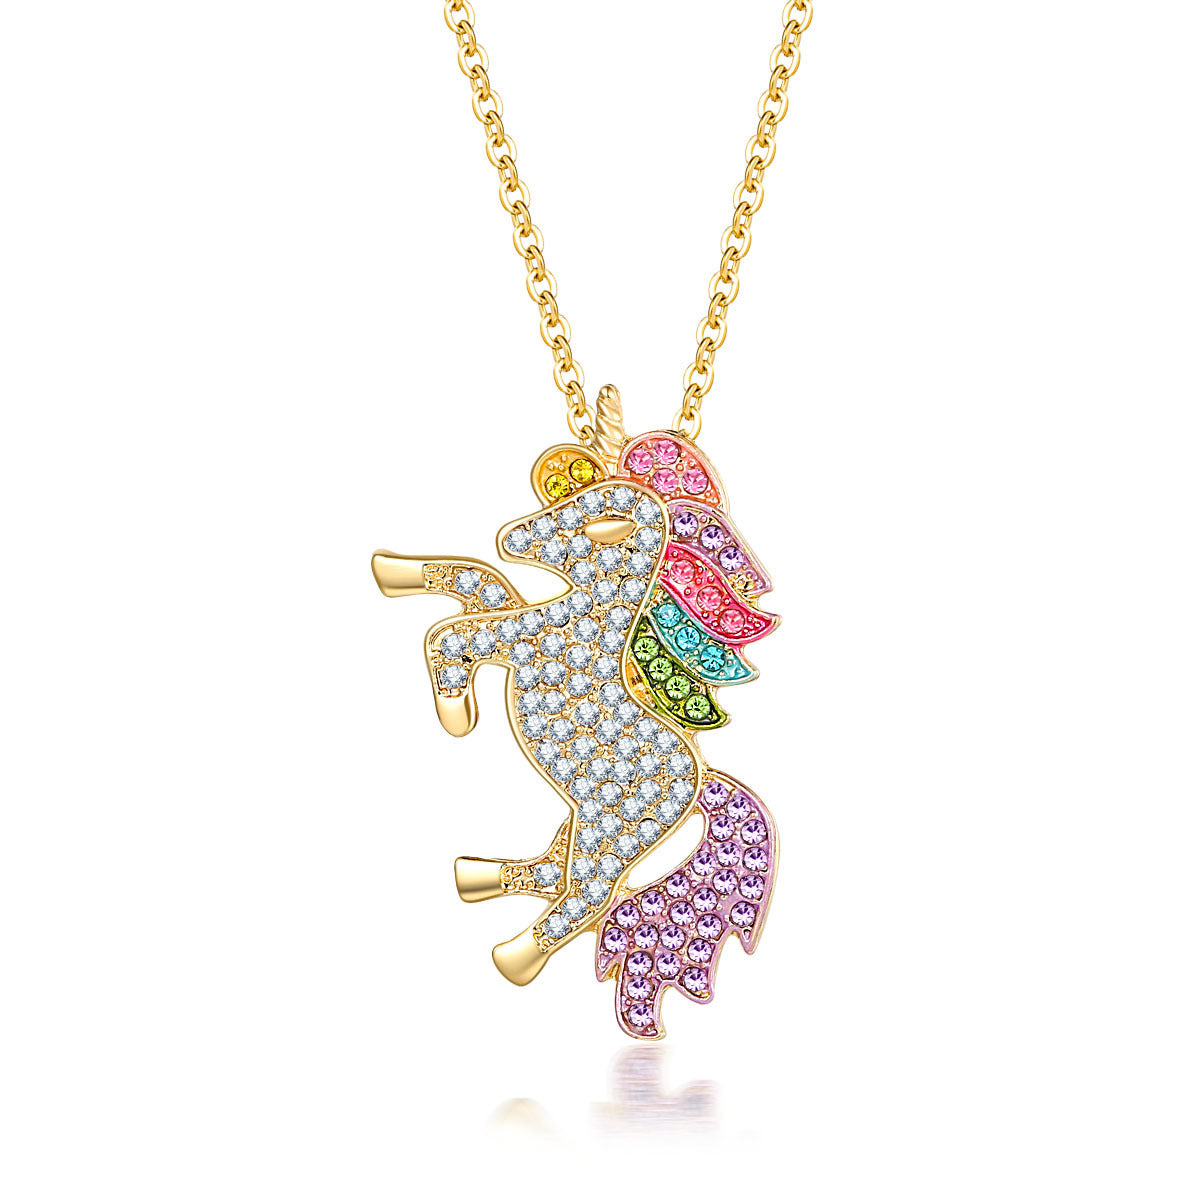 Blingy Unicorn Necklace